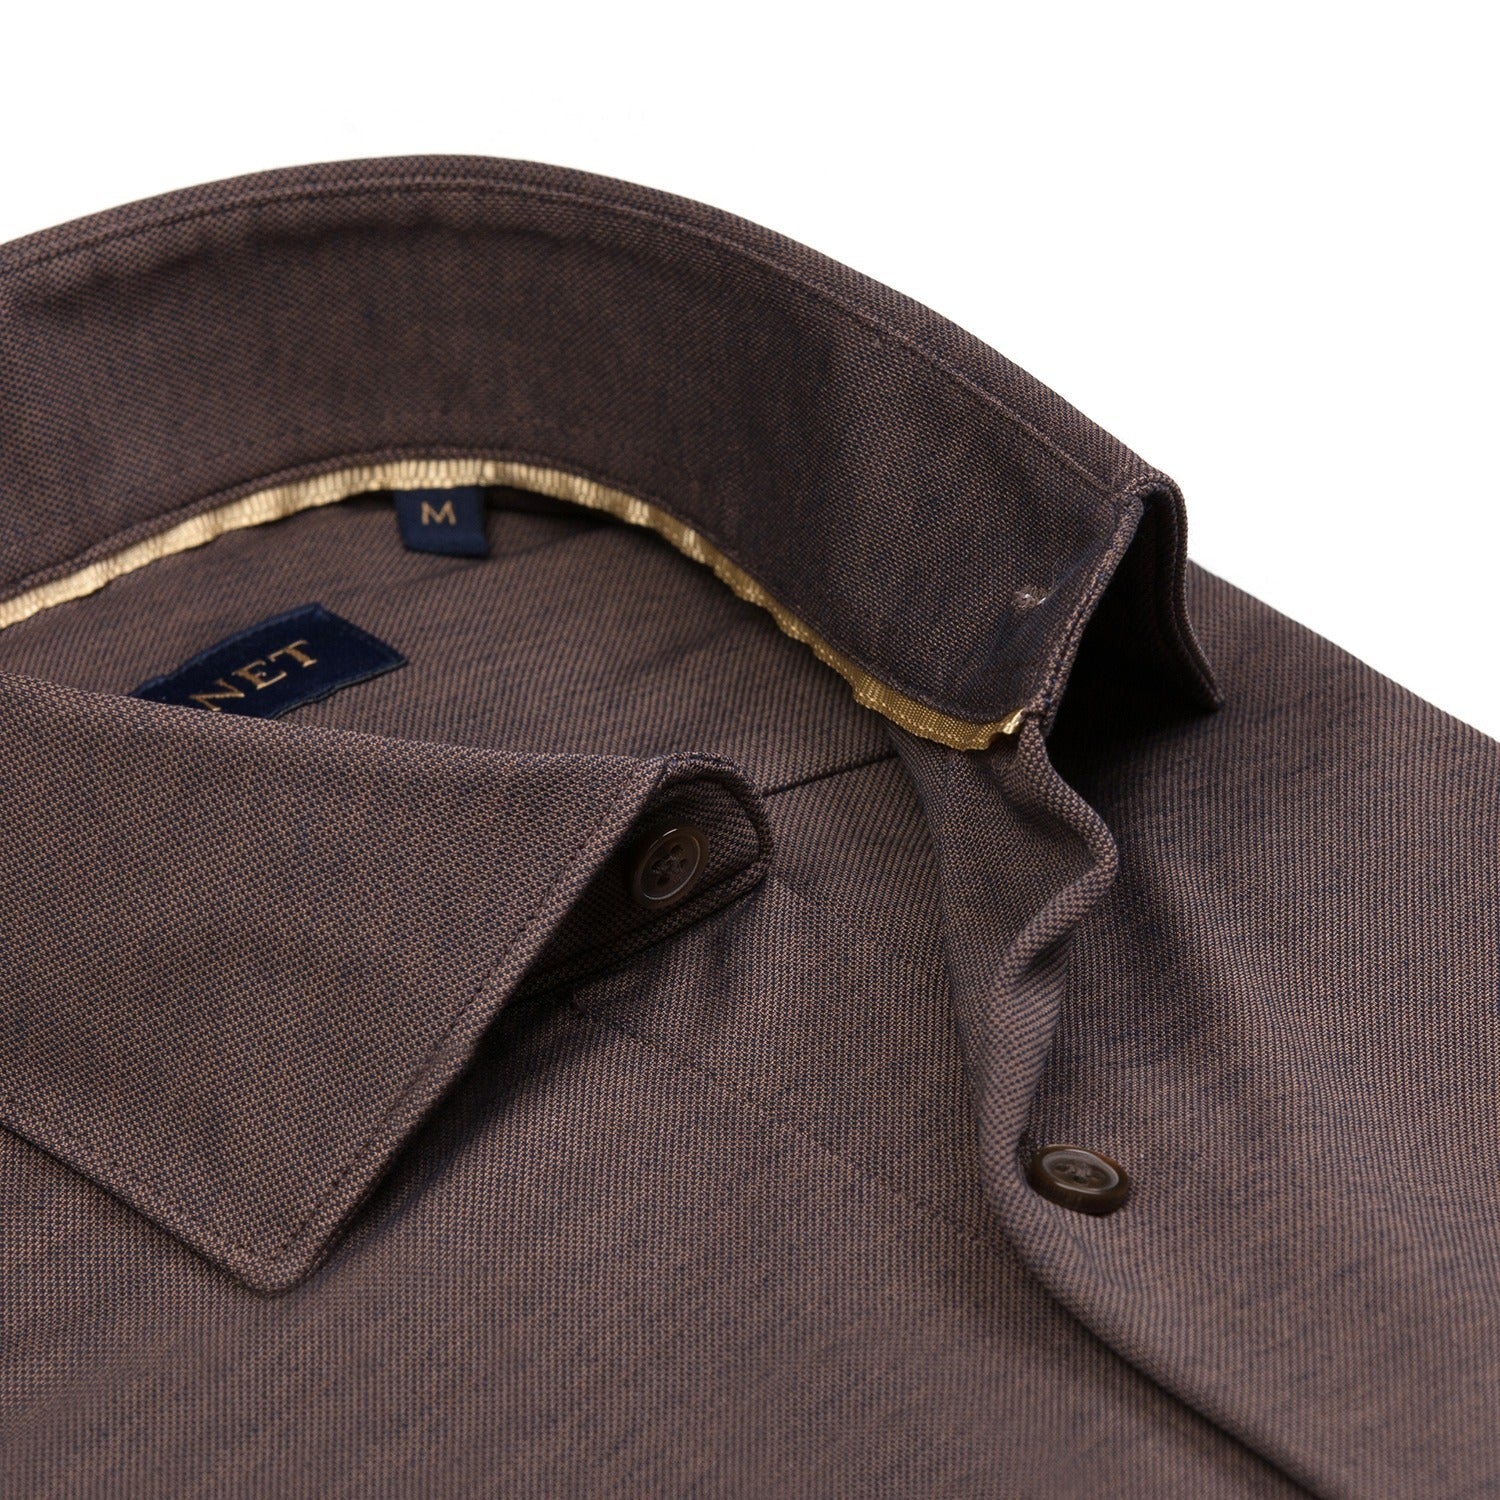 Garnet Italian Collar Jersey Long Sleeve Button Up Shirt